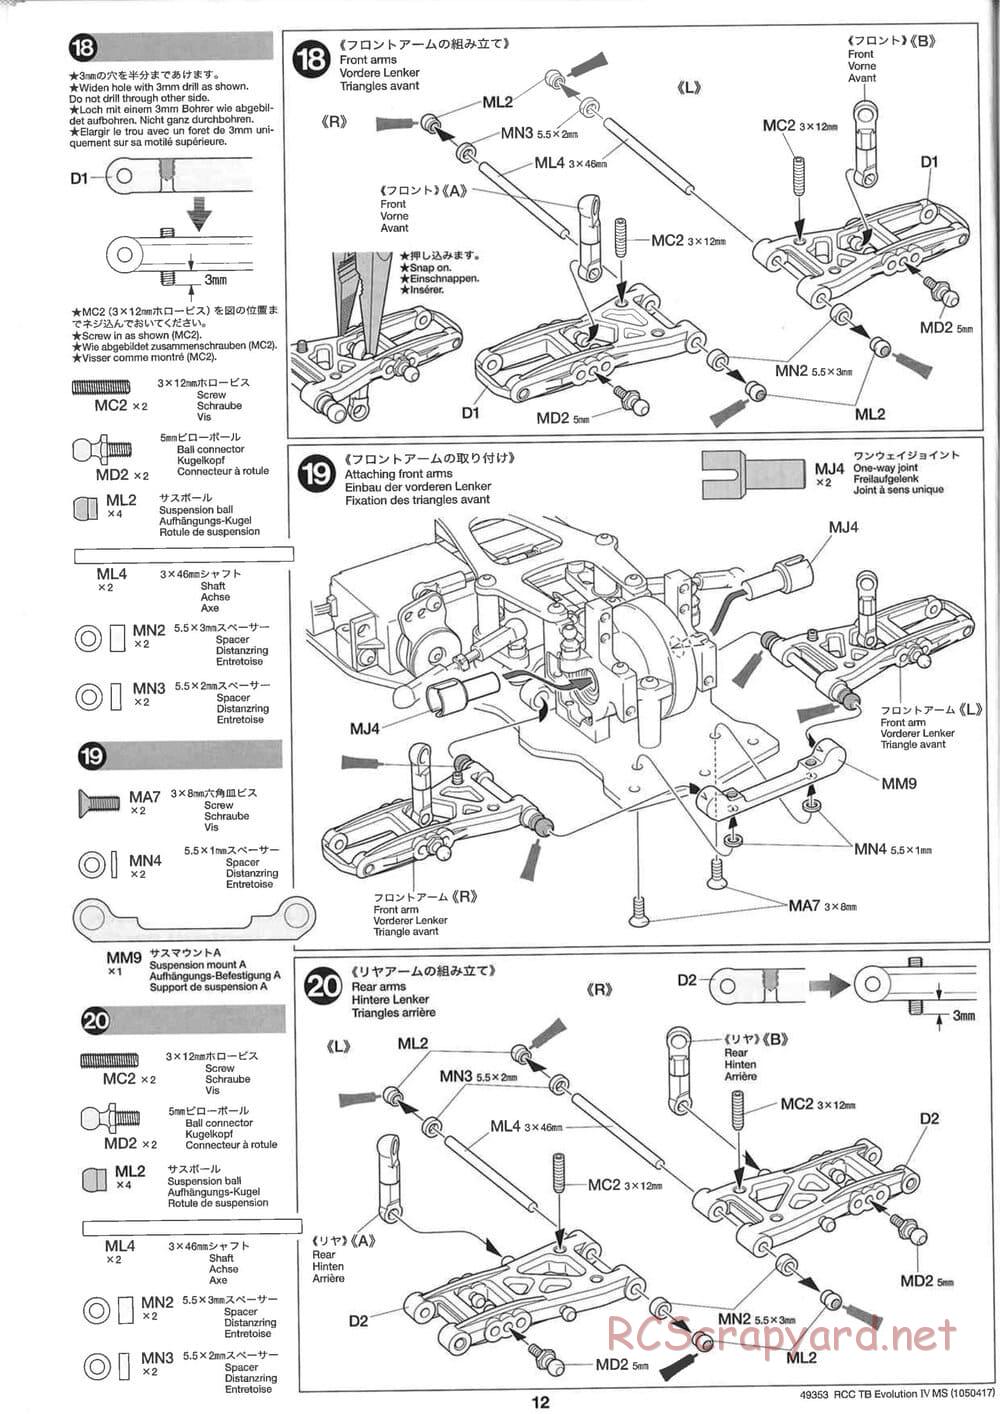 Tamiya - TB Evolution IV MS Chassis - Manual - Page 12